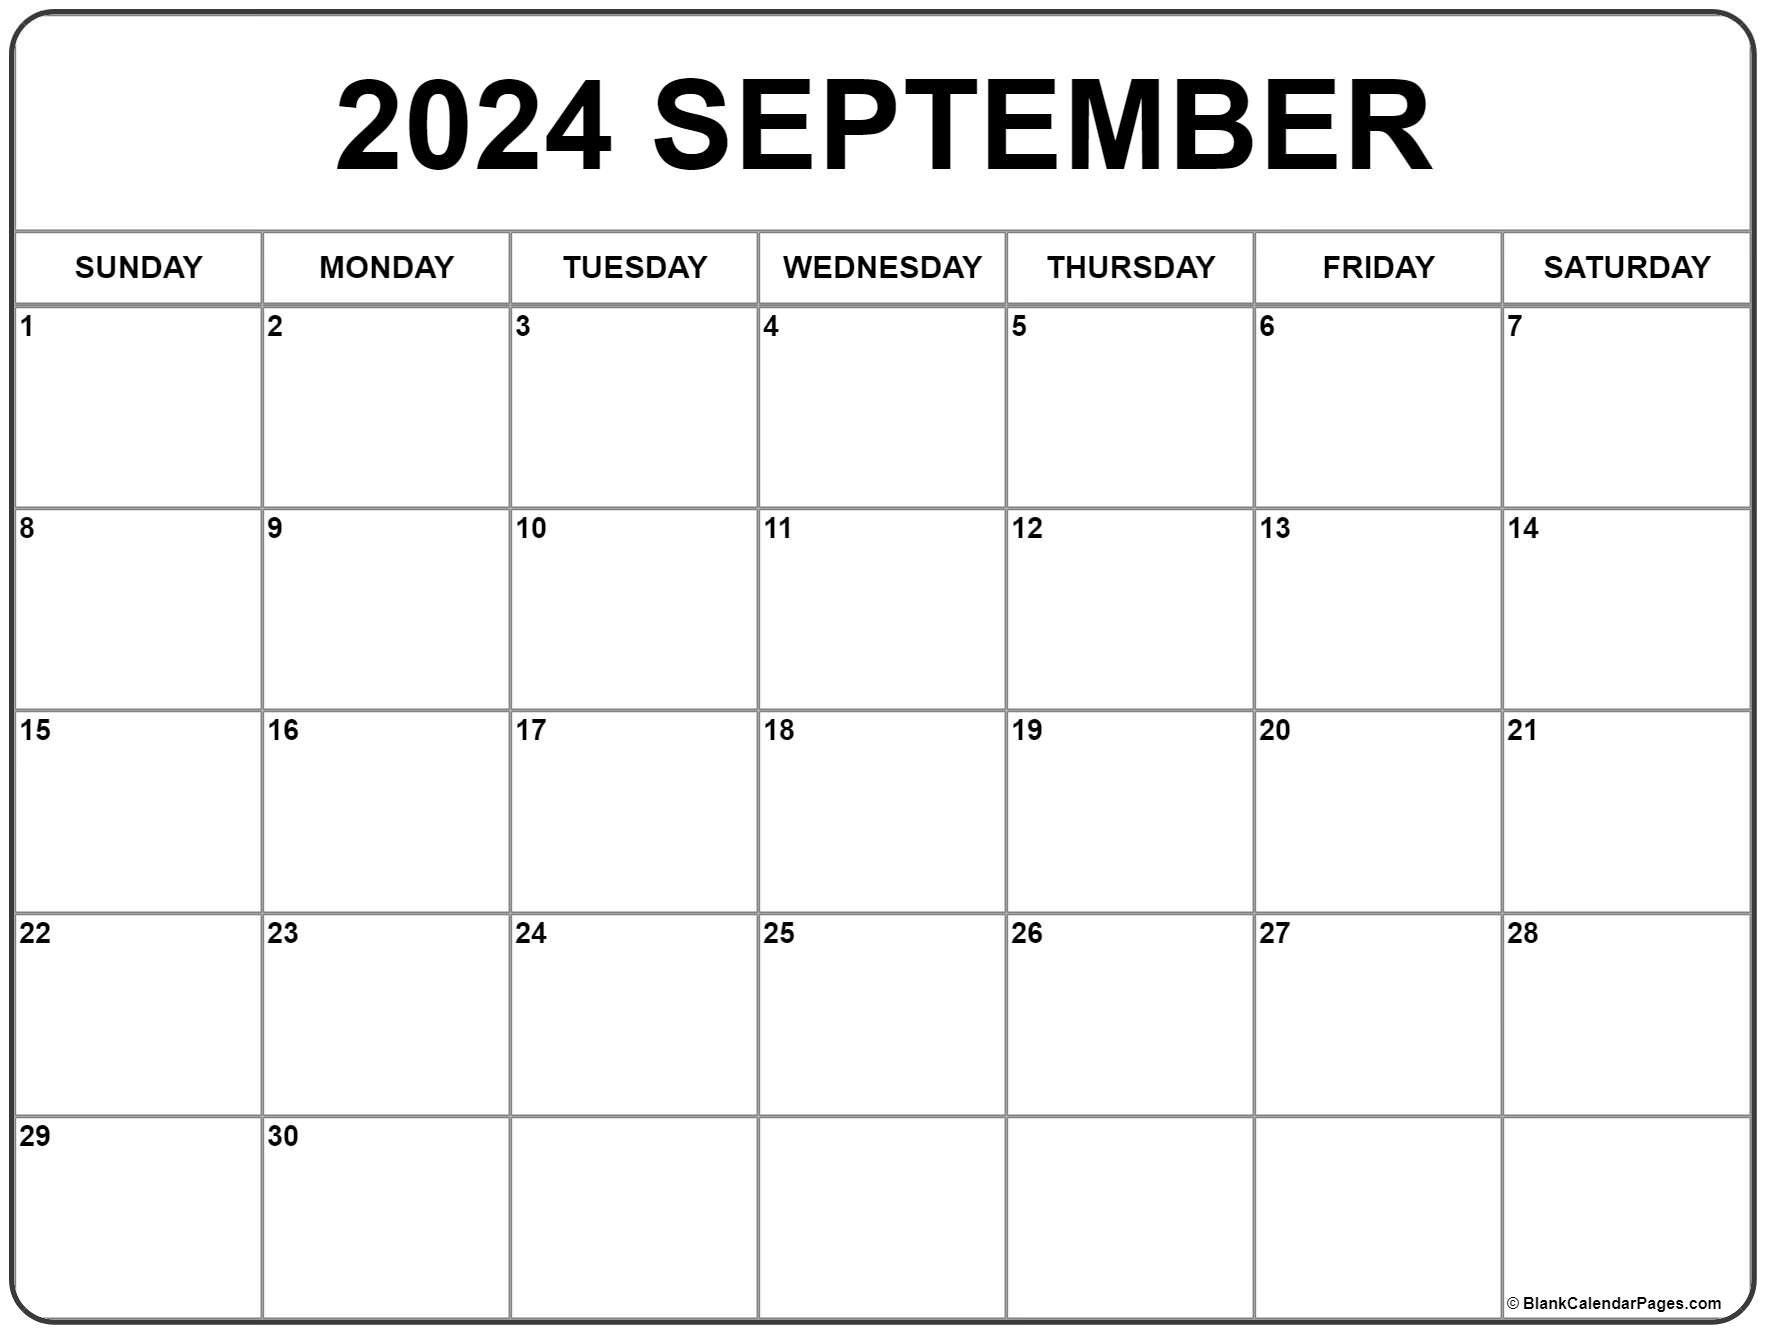 Monthly Calendar September 2022 Printable September 2022 Calendar | Free Printable Calendar Templates